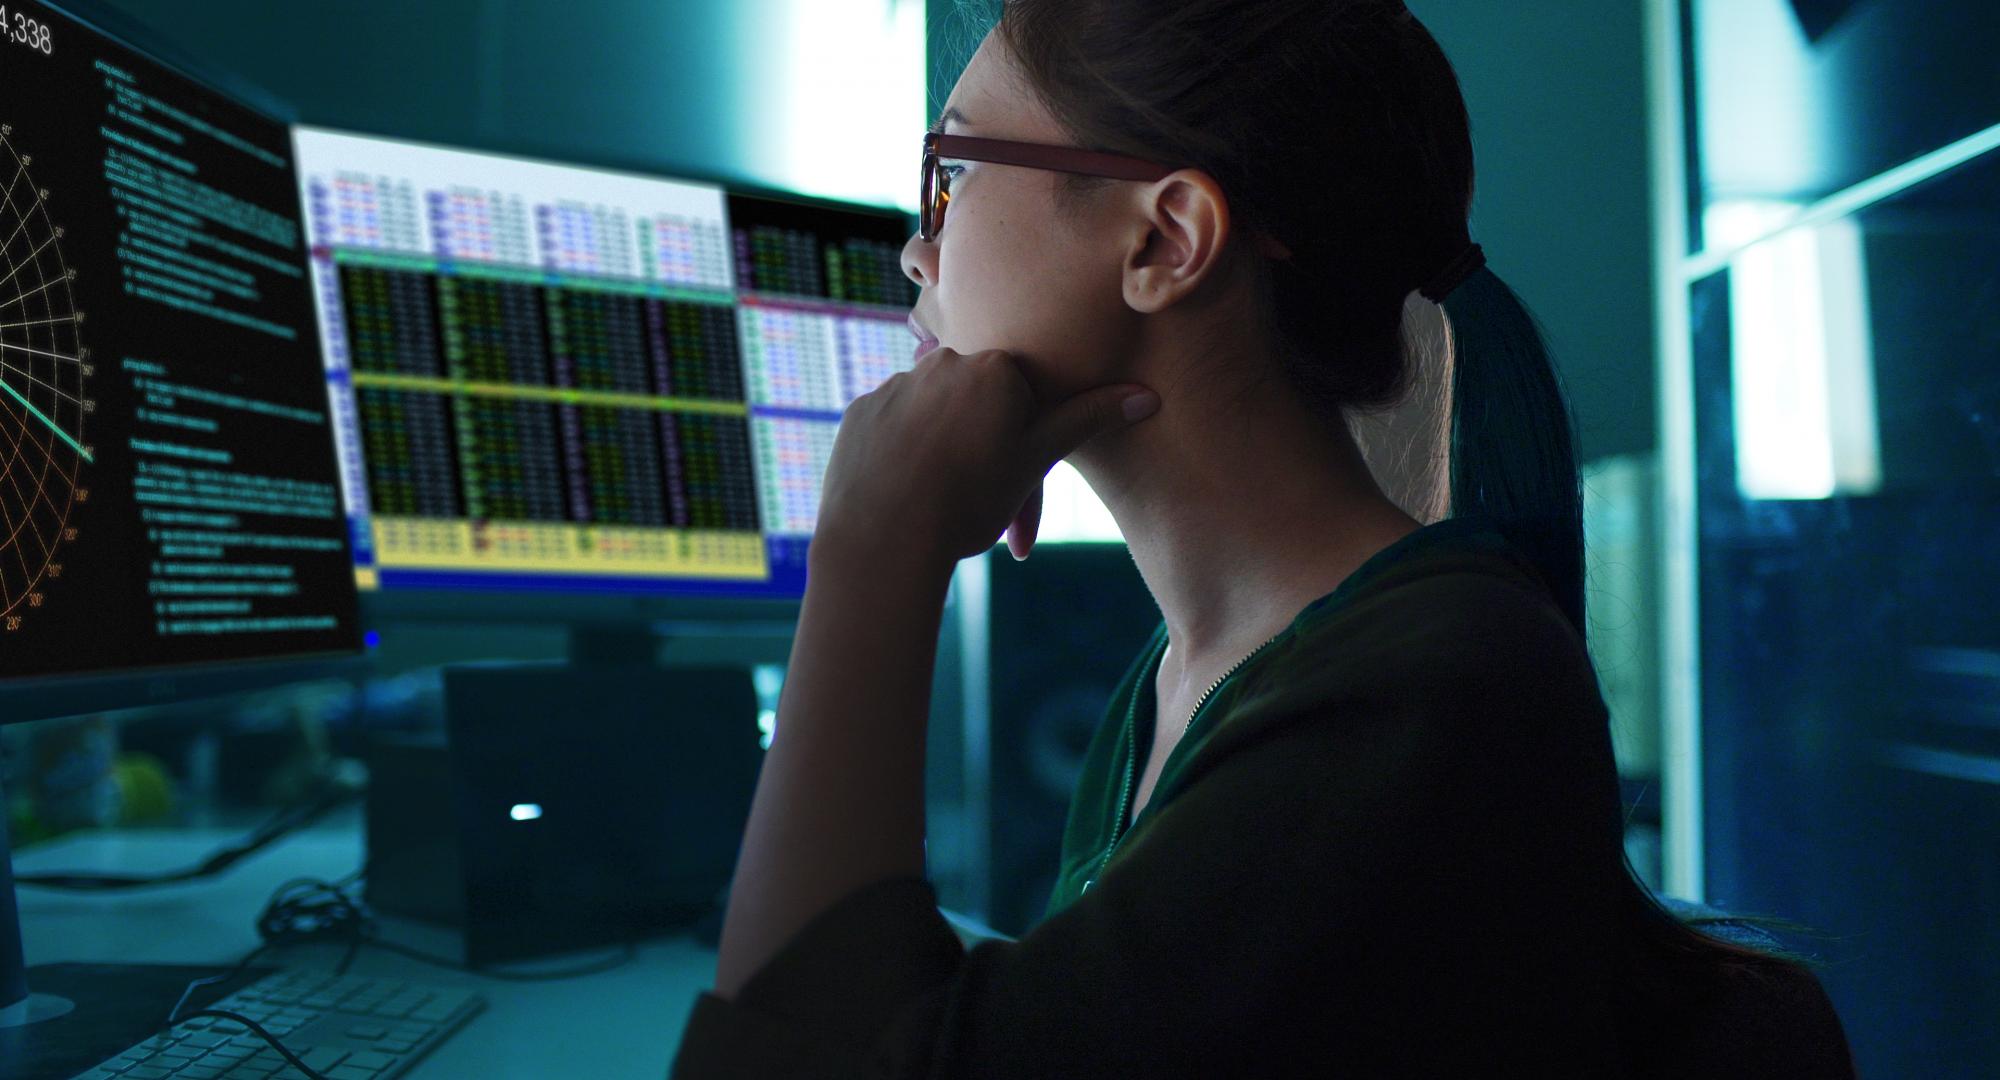 Woman sat at a computer analysing data